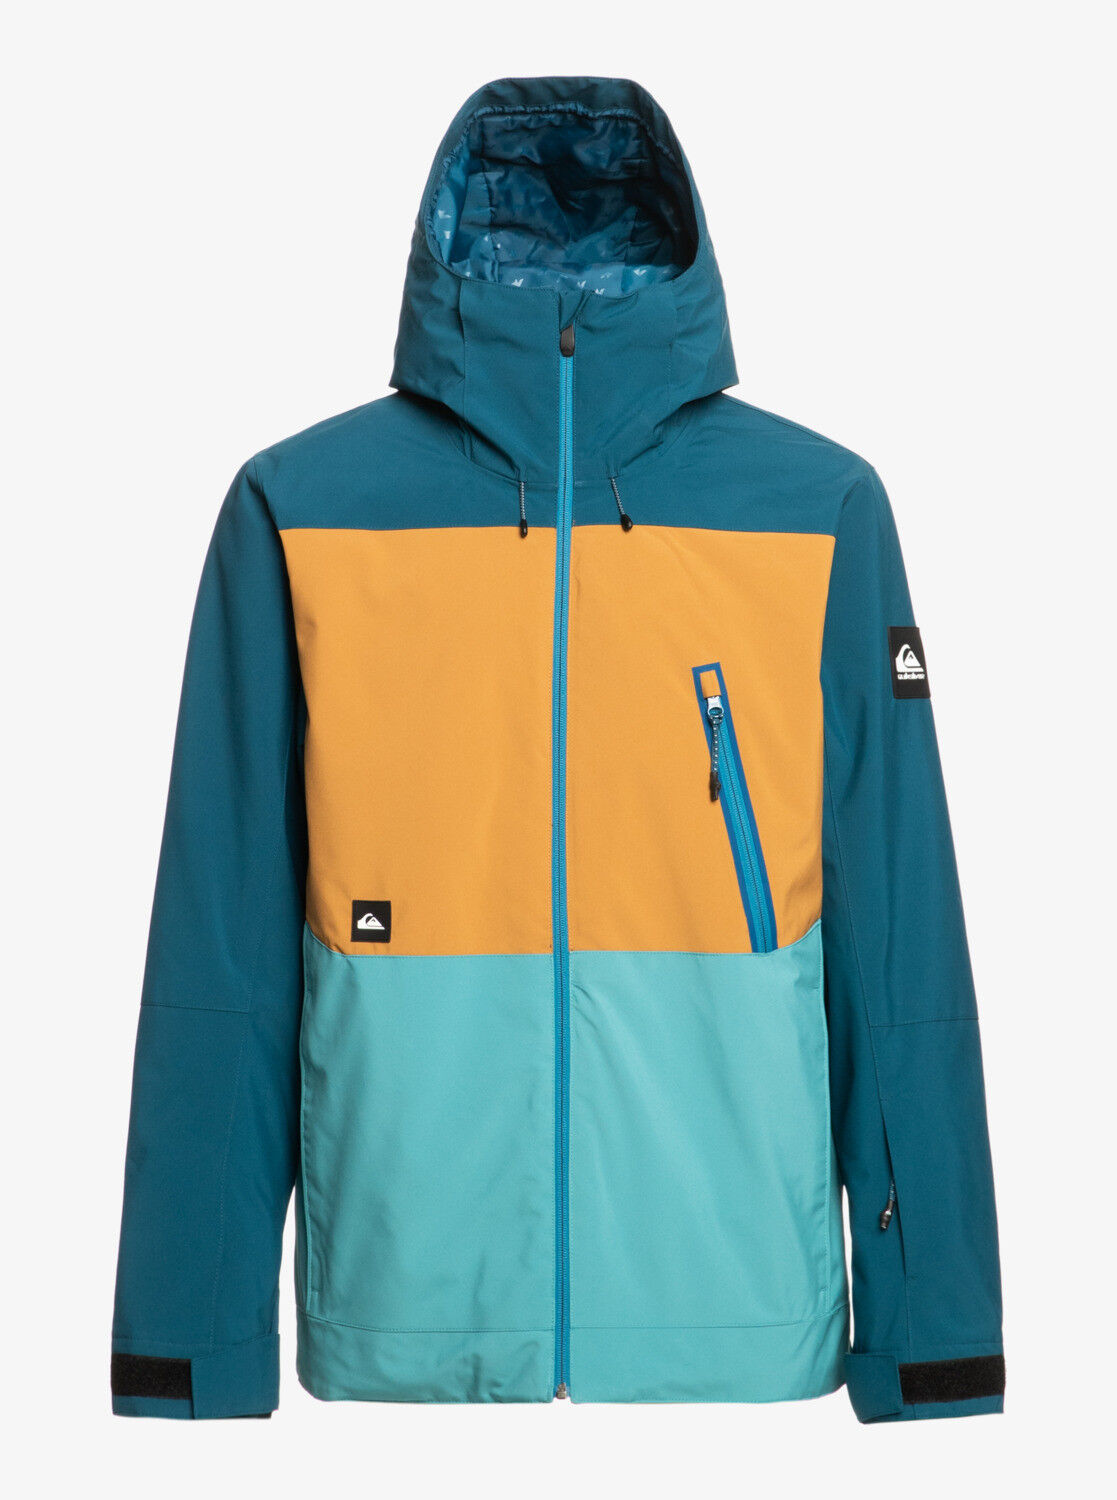 Quiksilver Sycamore Jacket - Ski jacket - Men's | Hardloop